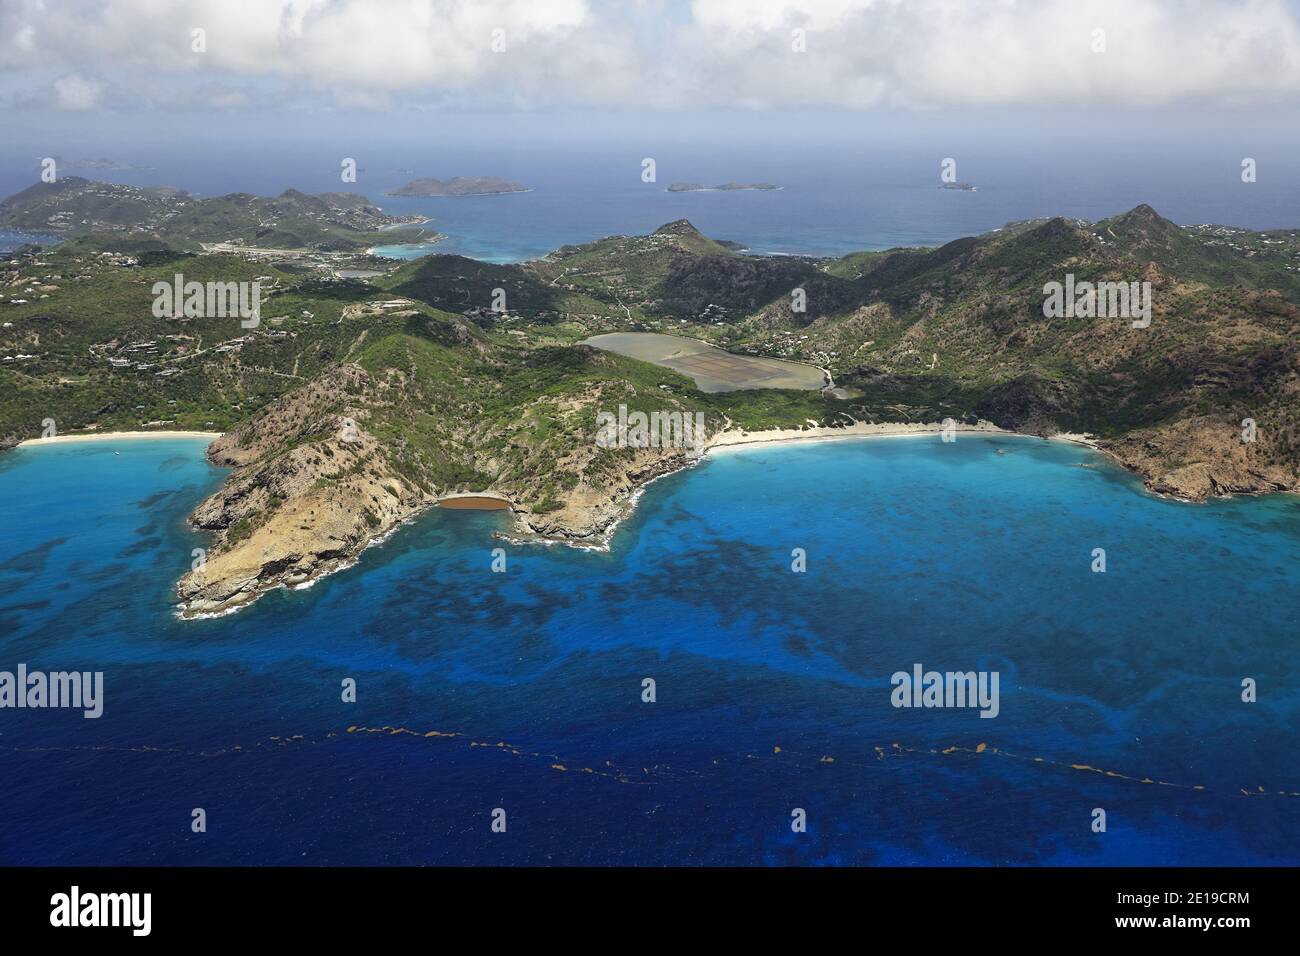 Karibik, Saint Barthelemy Island (St. Barths oder St. Barts): Grande Saline. Reproduktion in nautischen Zeitschriften, nautischen Führern oder nautischen Websites Stockfoto